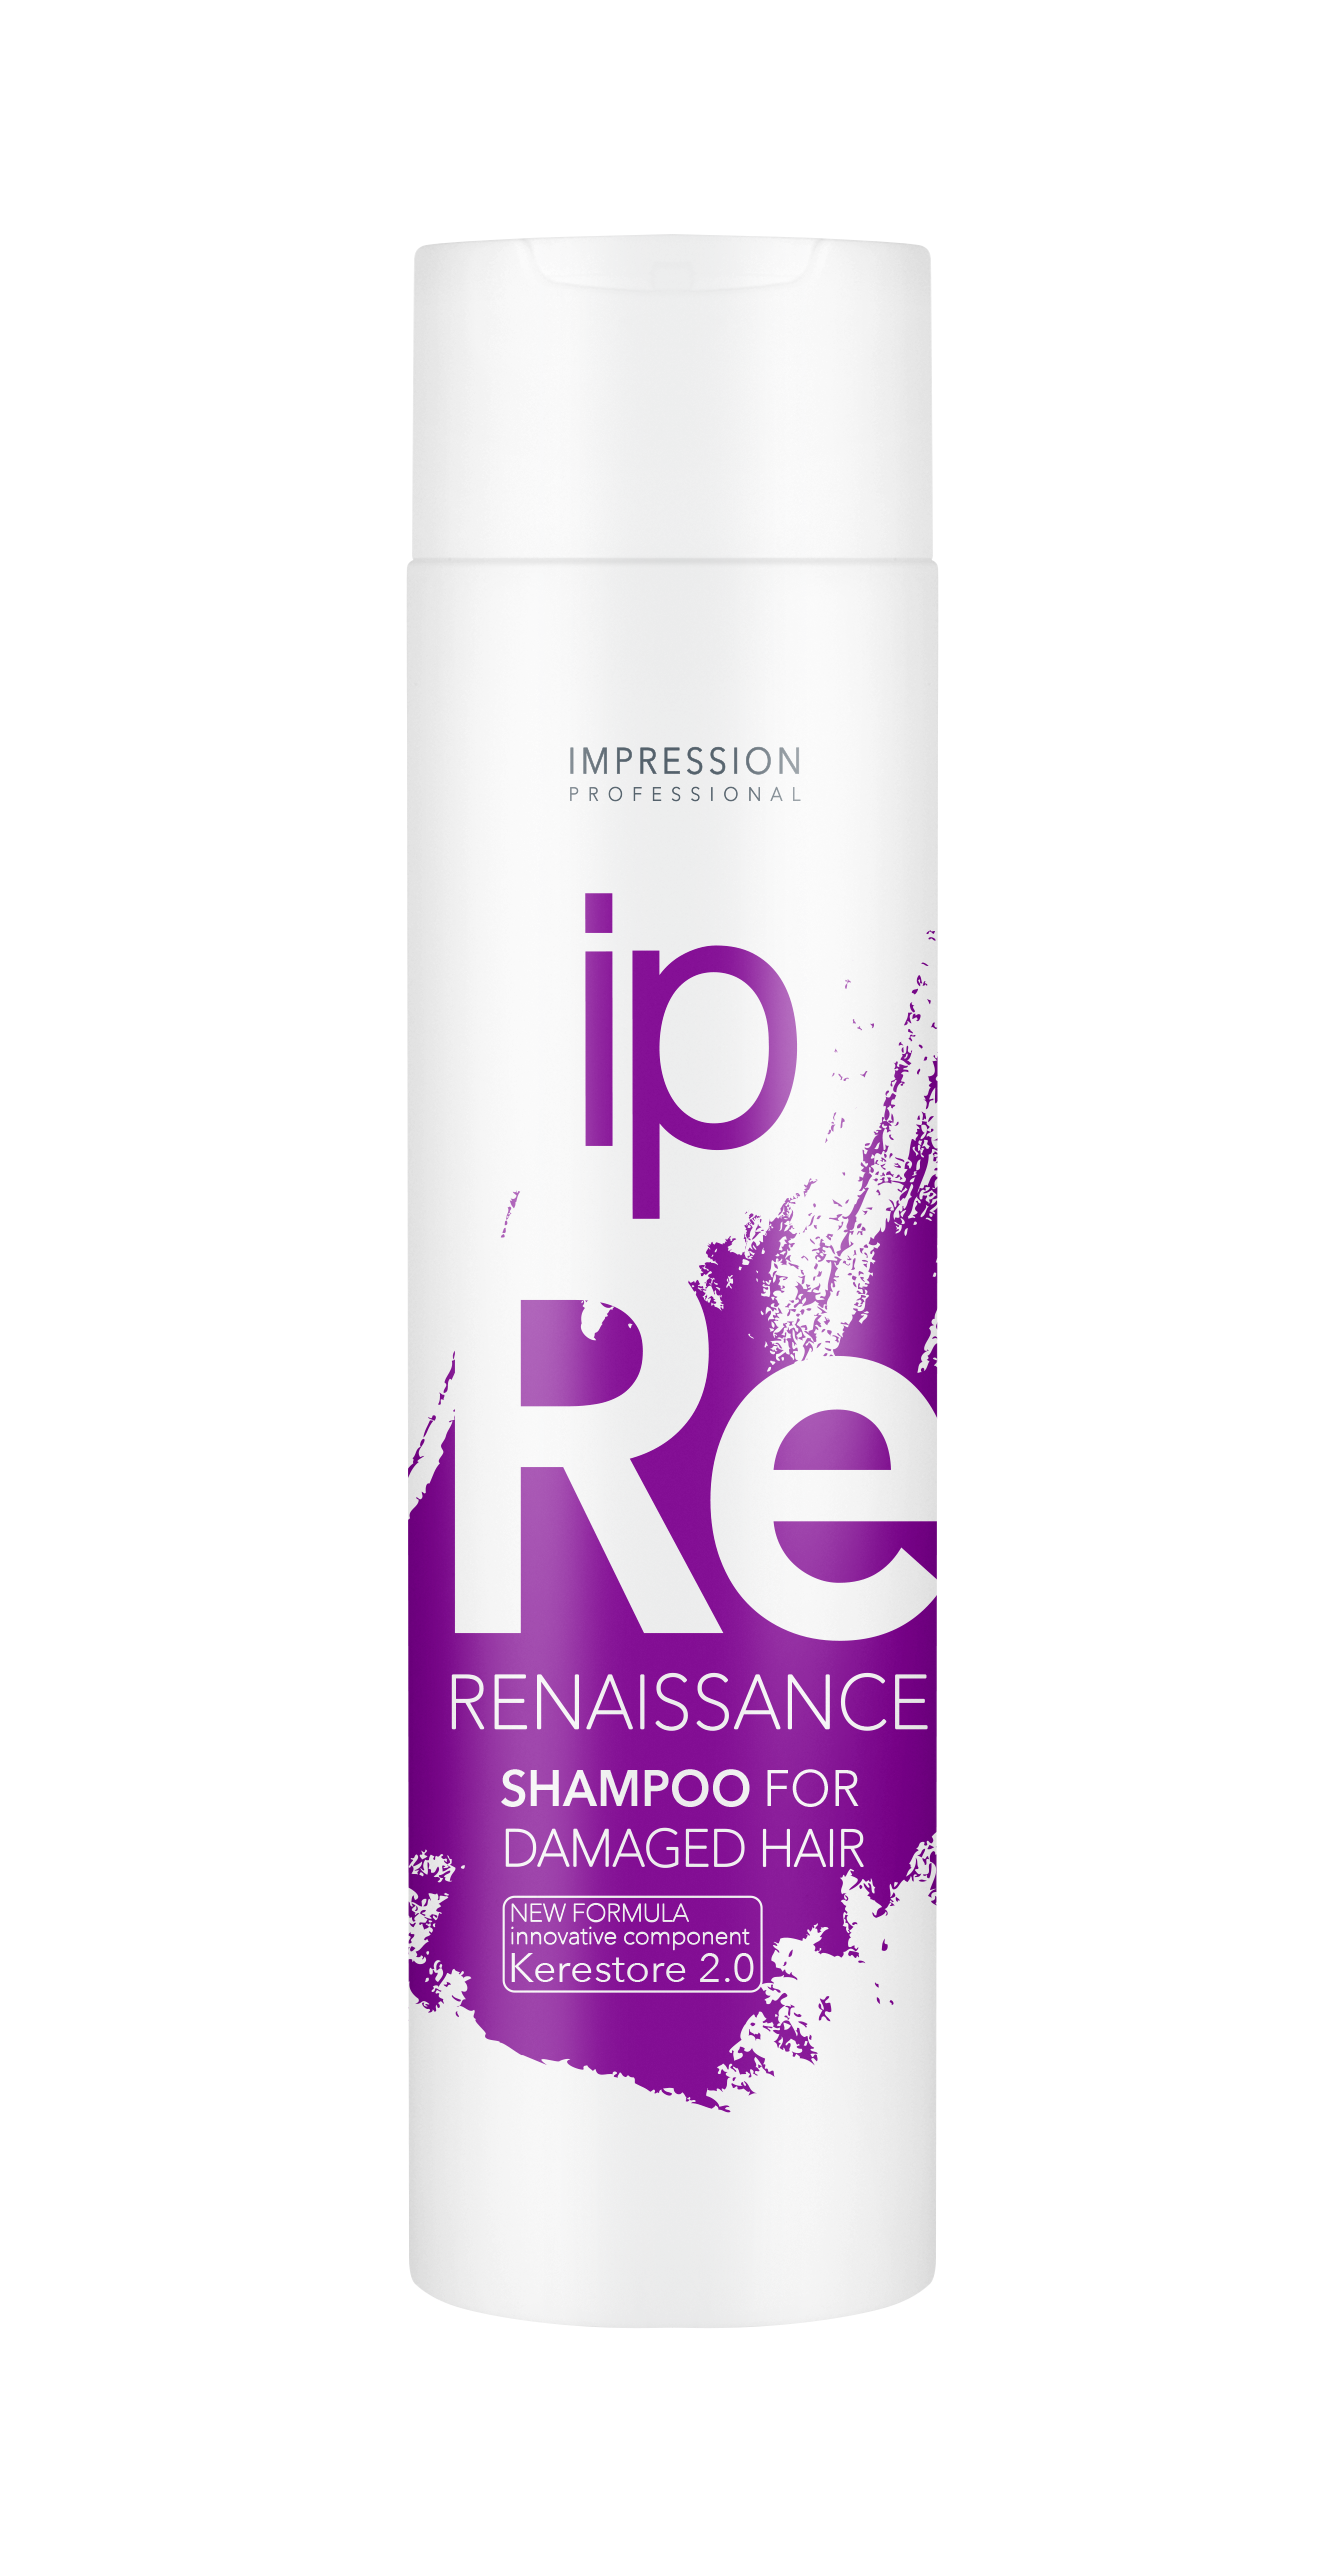 Шампунь для волос Impression Professional Renaissance восстанавливающий для поврежденных волос 250мл - в интернет-магазине tut-beauty.by